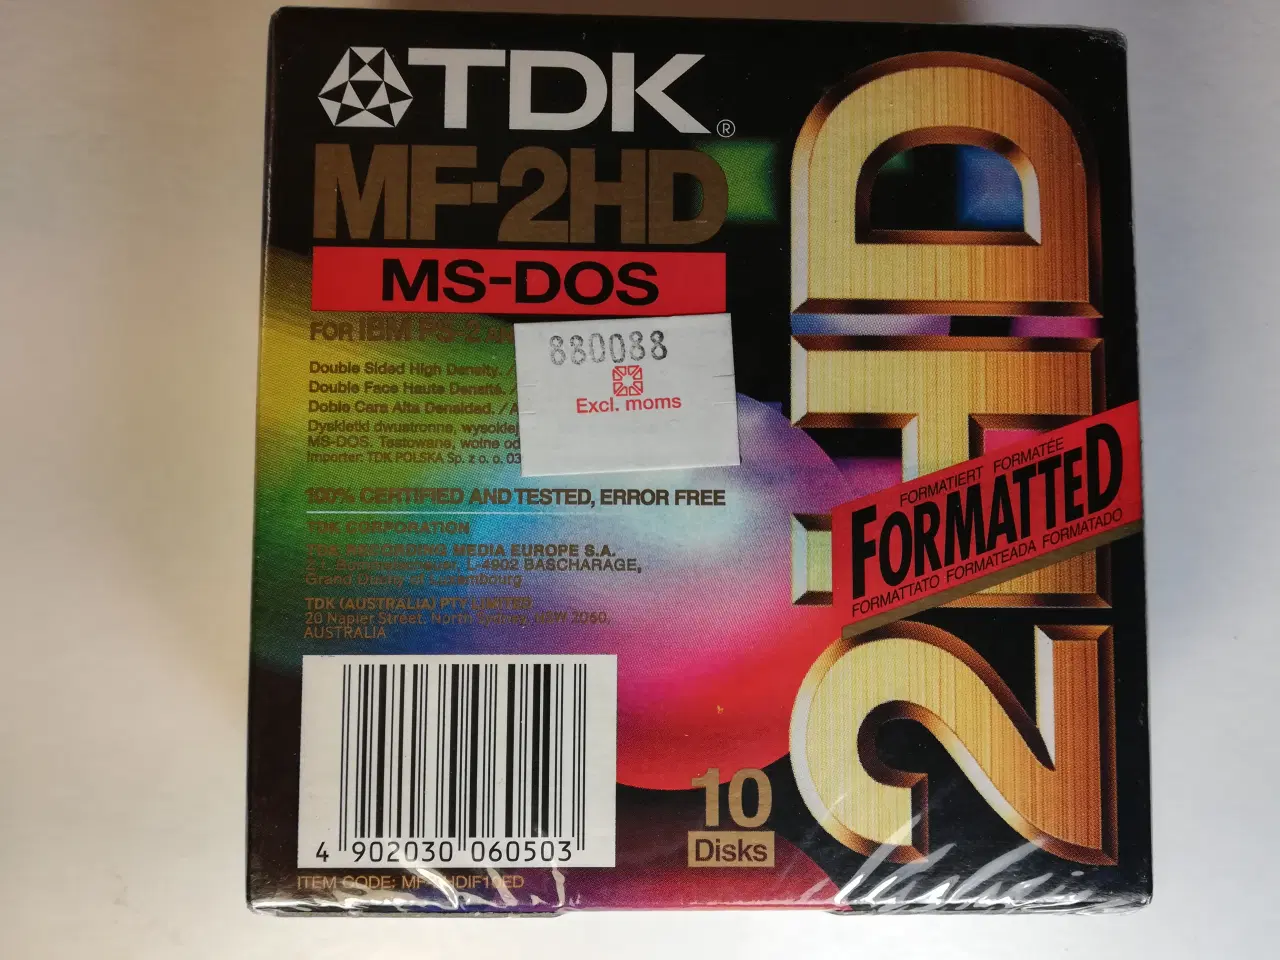 Billede 2 - TDK MF-2HD Floppy Disks, 10 stk. - NYE